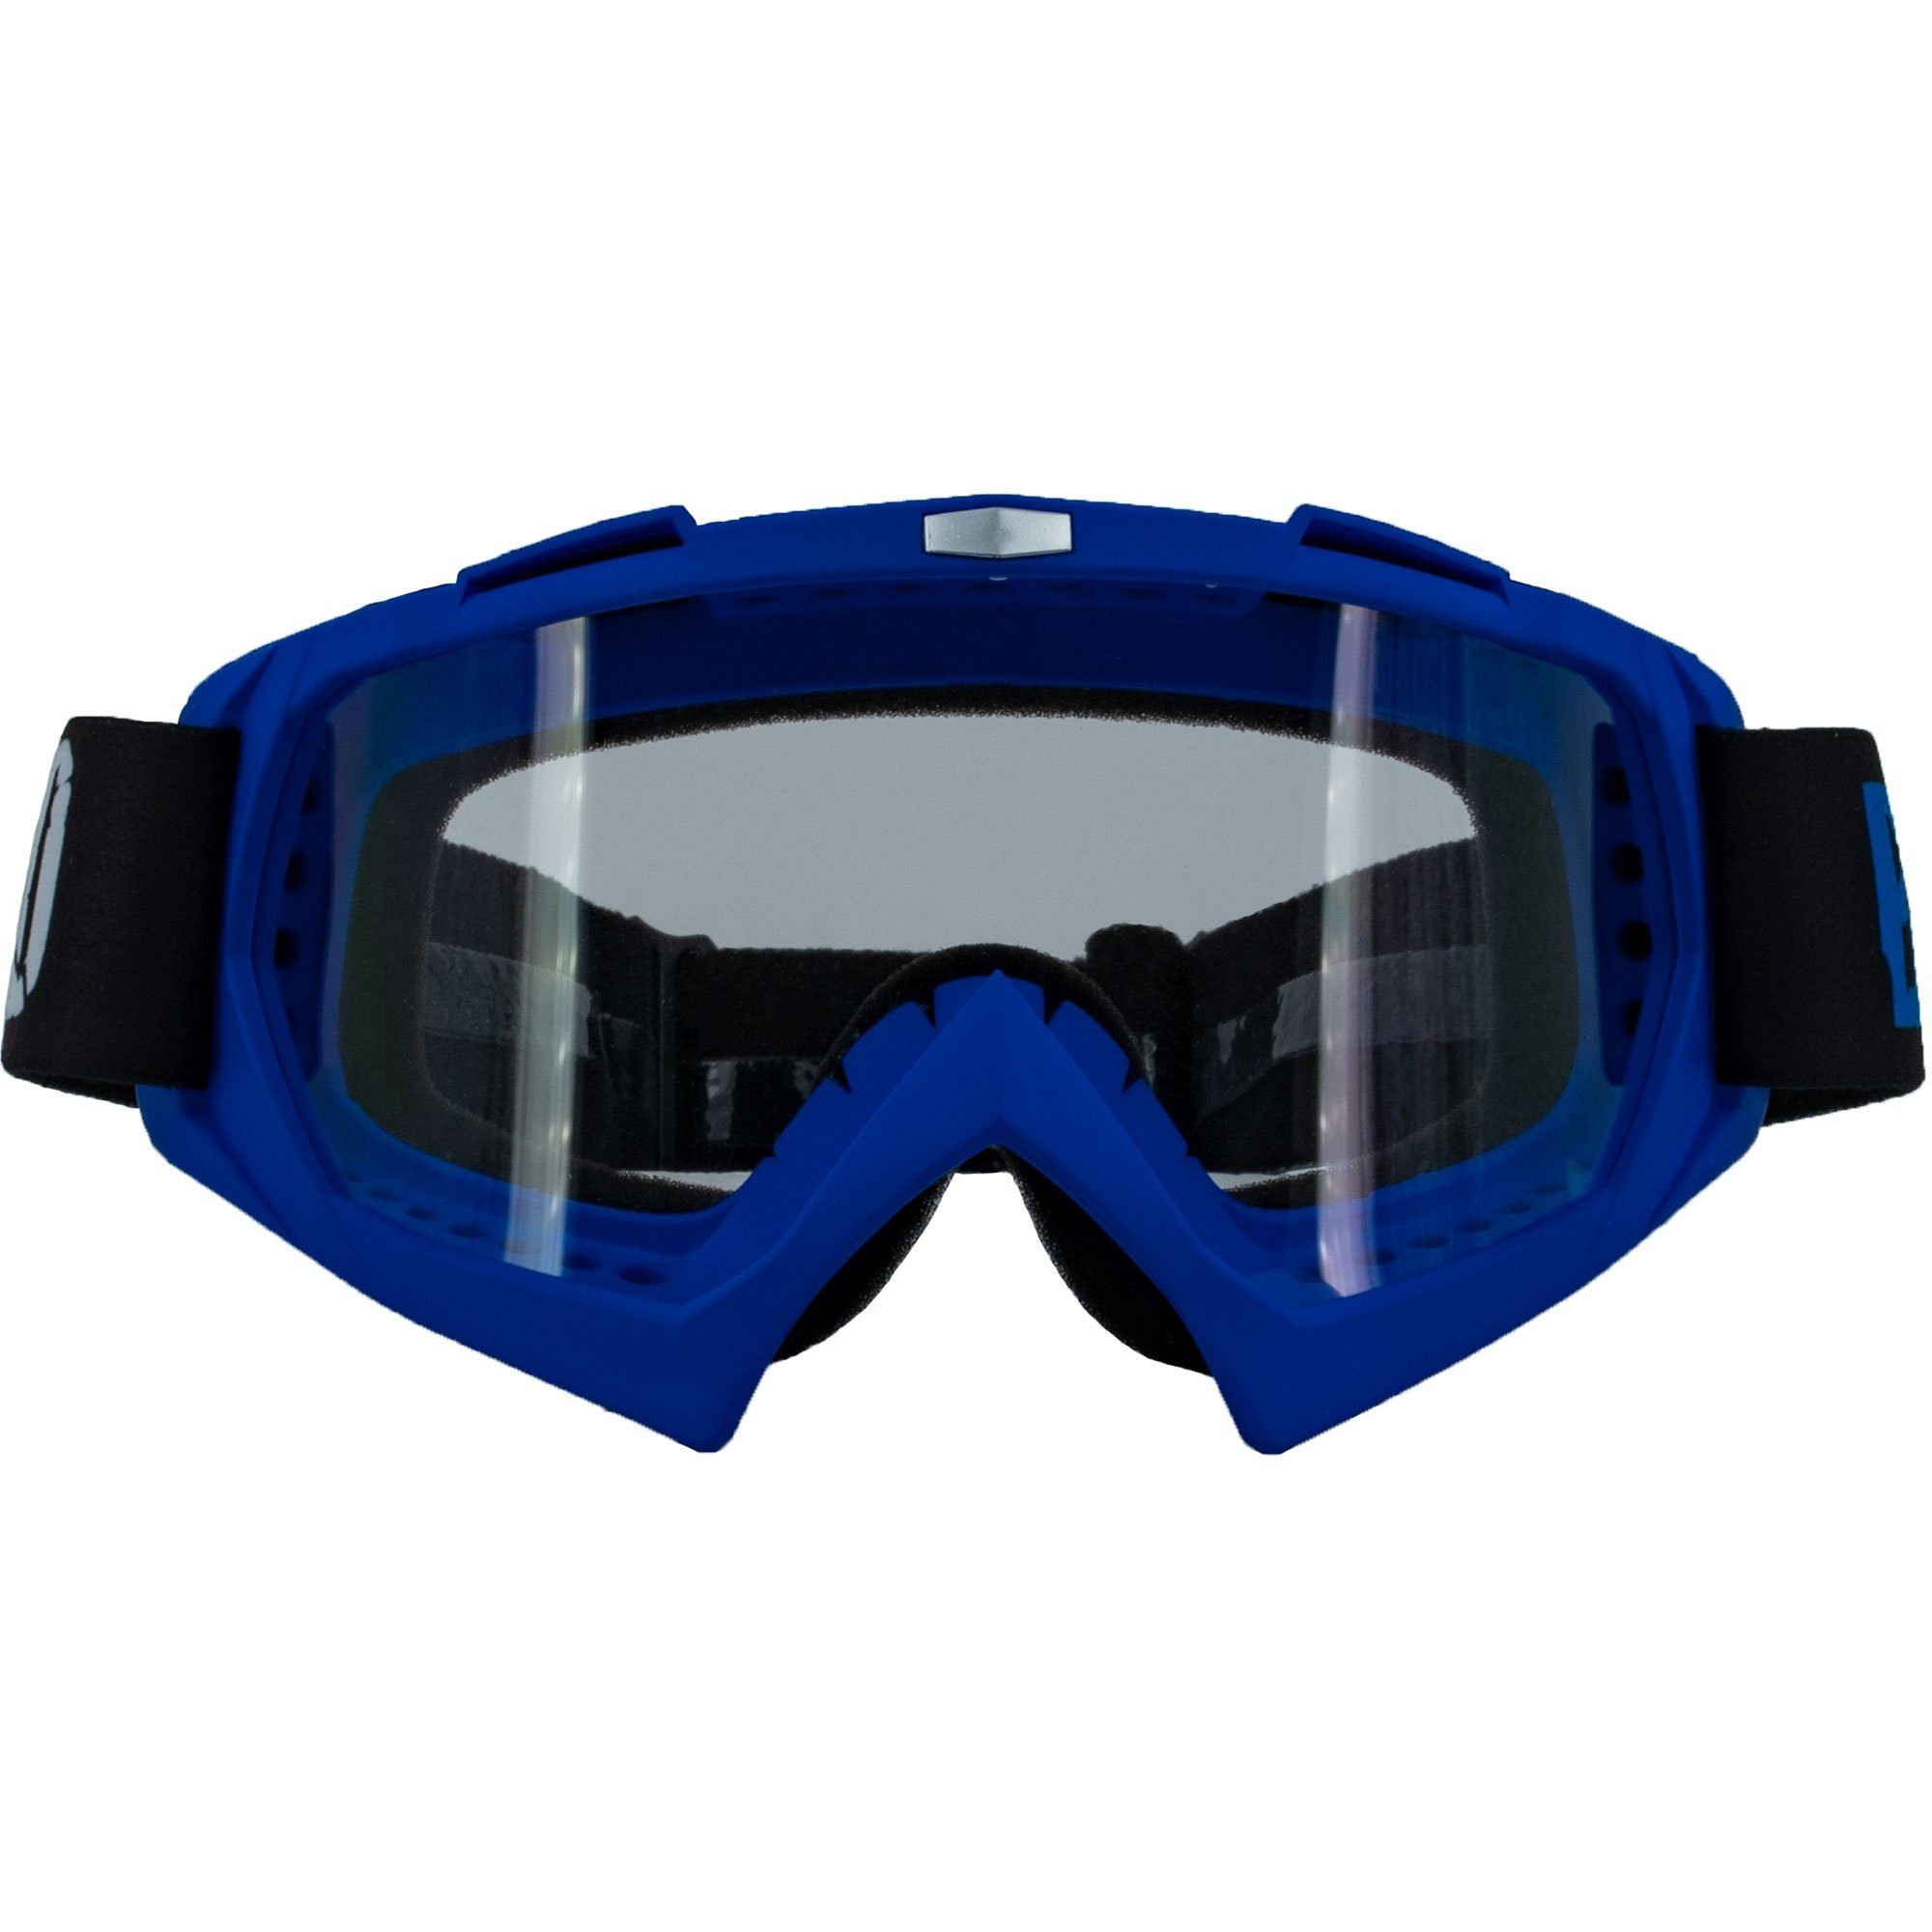 Damen Brillen Broken Head Motorradbrille Crossbrille MX-2 Goggle Blau, Vorrichtung für Abreißvisiere